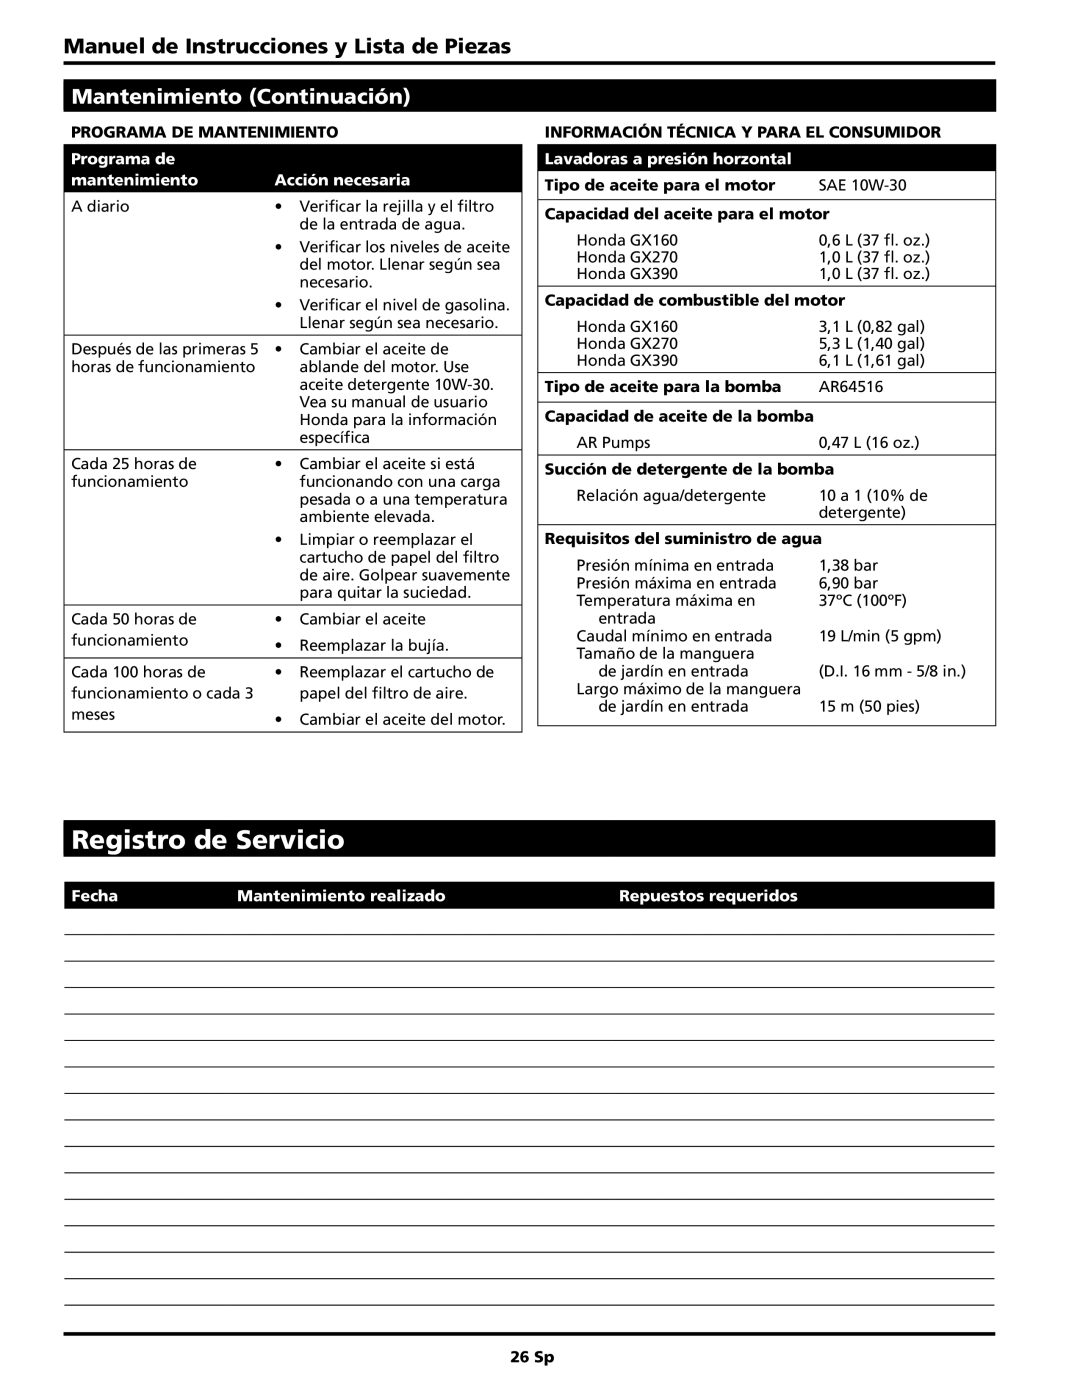 Campbell Hausfeld PW4035 Registro de Servicio, Mantenimiento Continuación, Manuel de Instrucciones y Lista de Piezas 